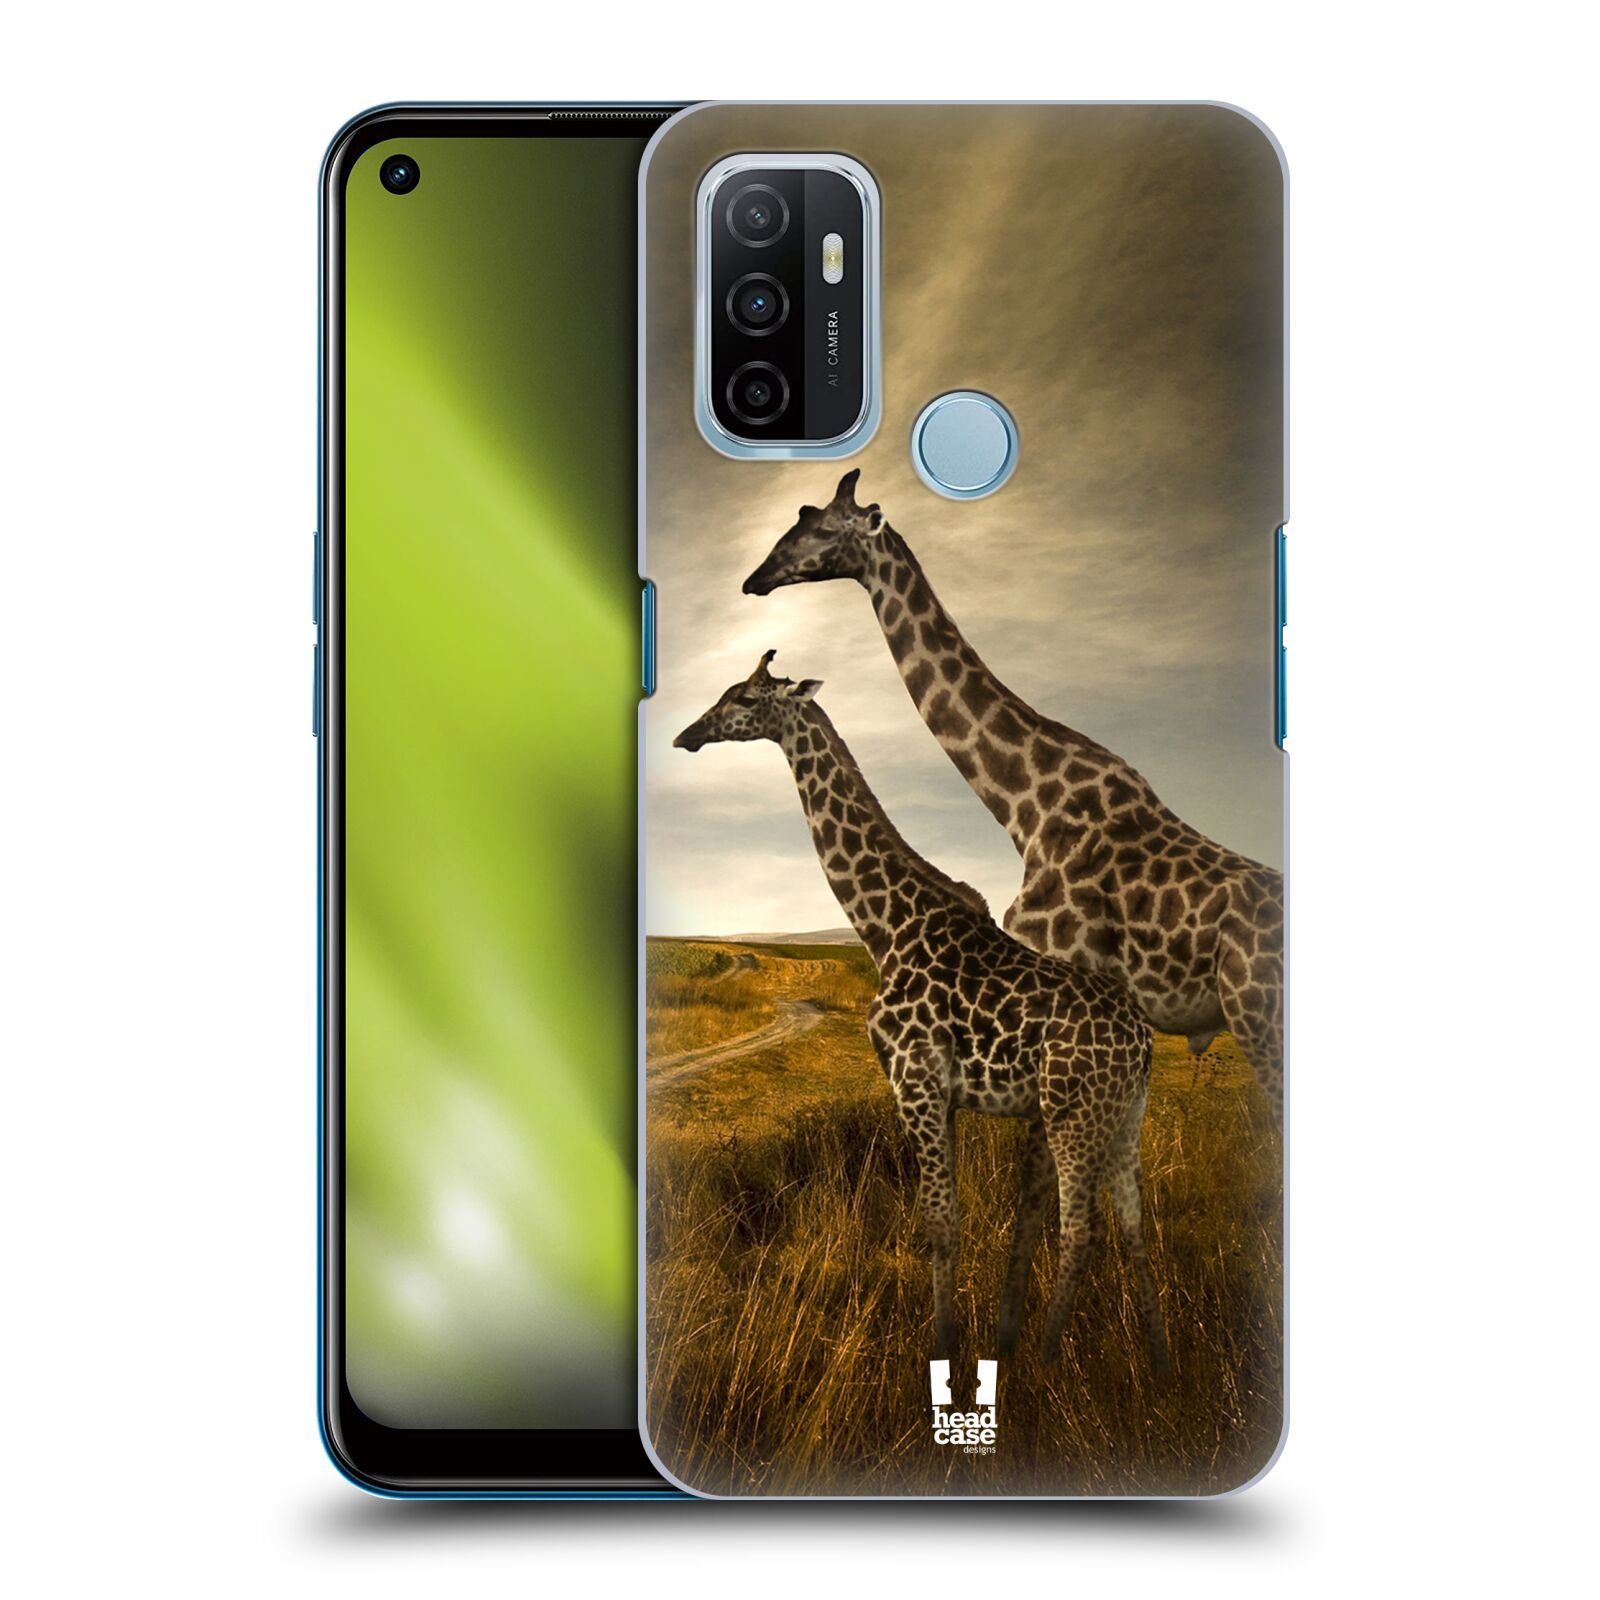 Zadní obal pro mobil Oppo A53 / A53s - HEAD CASE - Svět zvířat žirafy